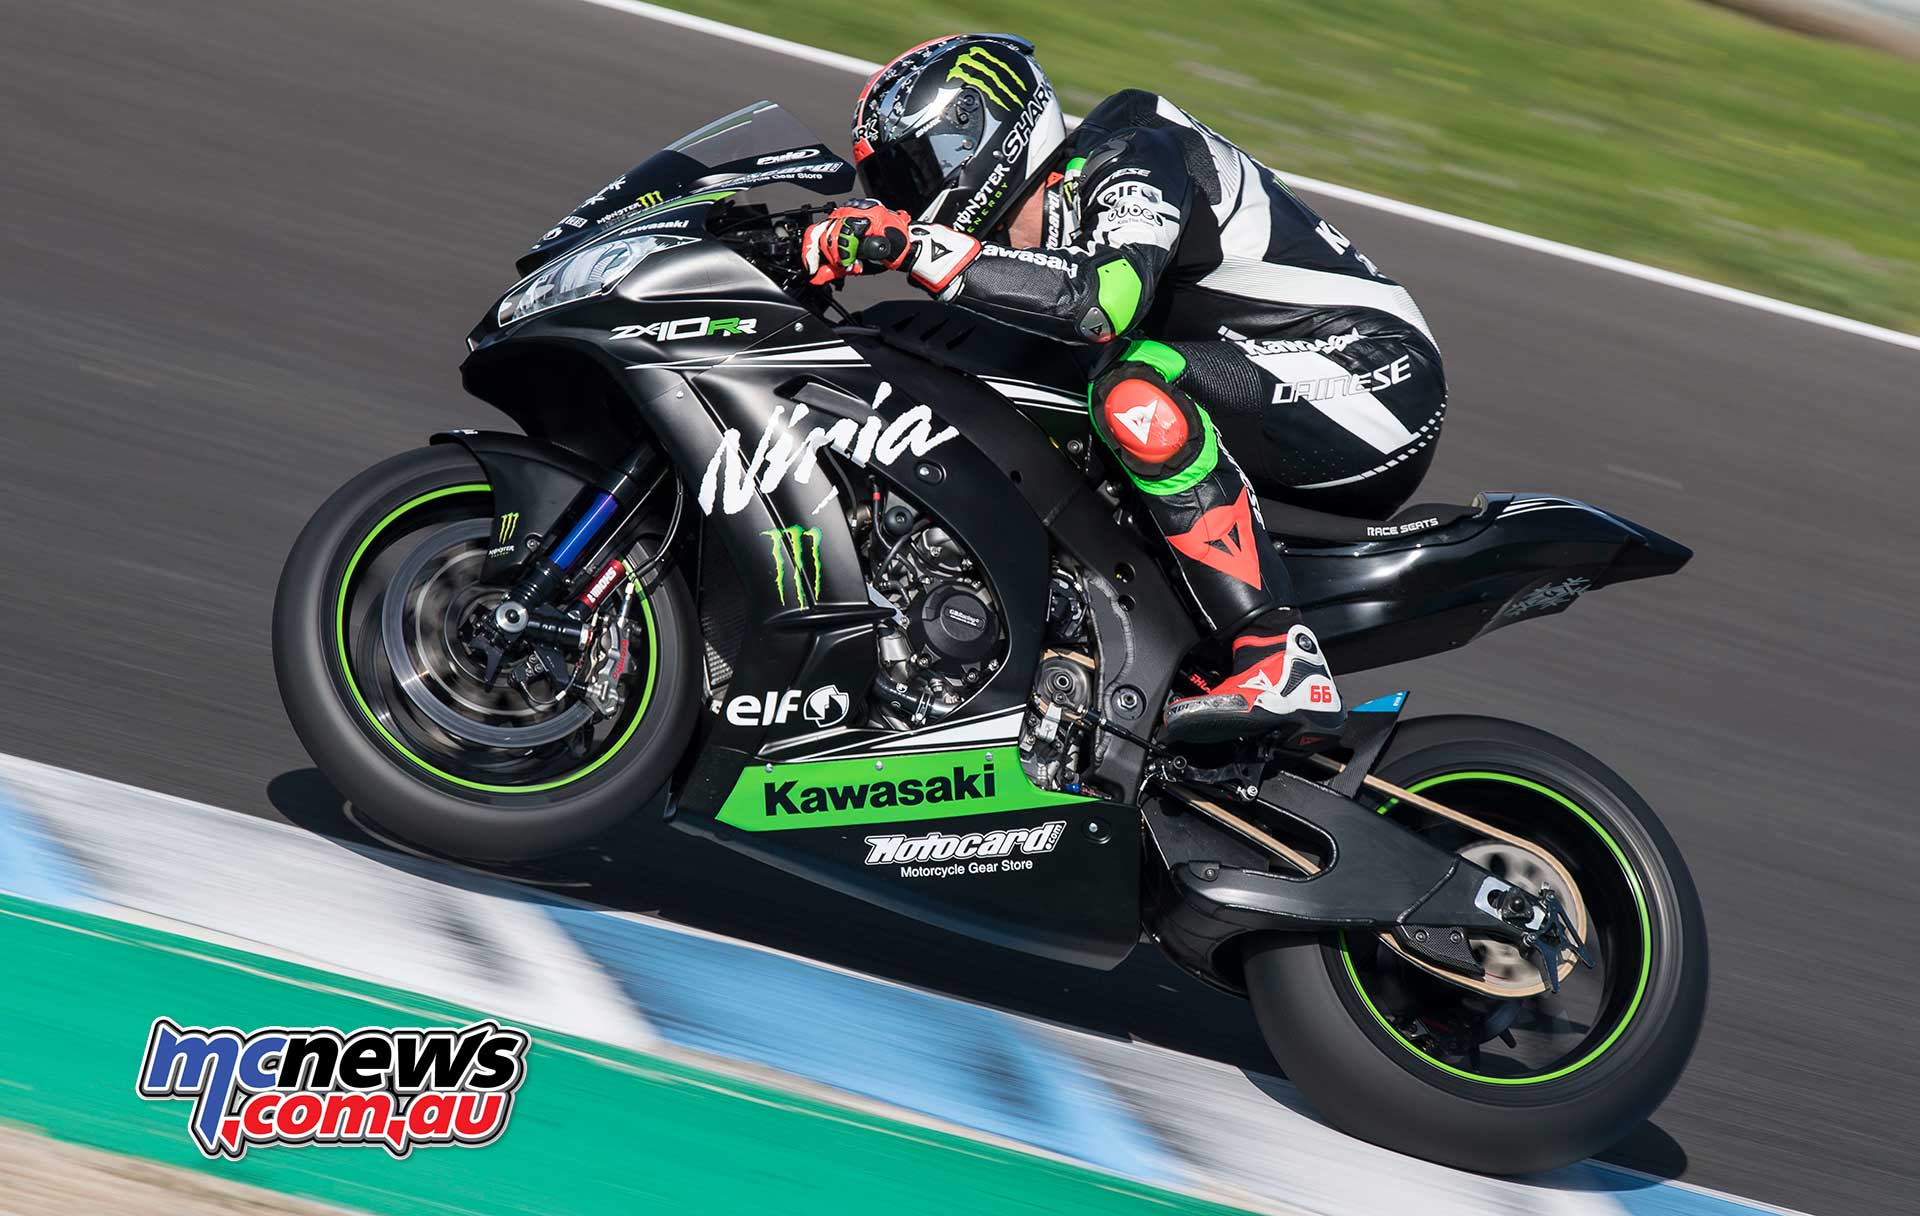 Wsbk 18 New Rules Same Result Kawasaki 1 2 Motorcycle News Sport And Reviews